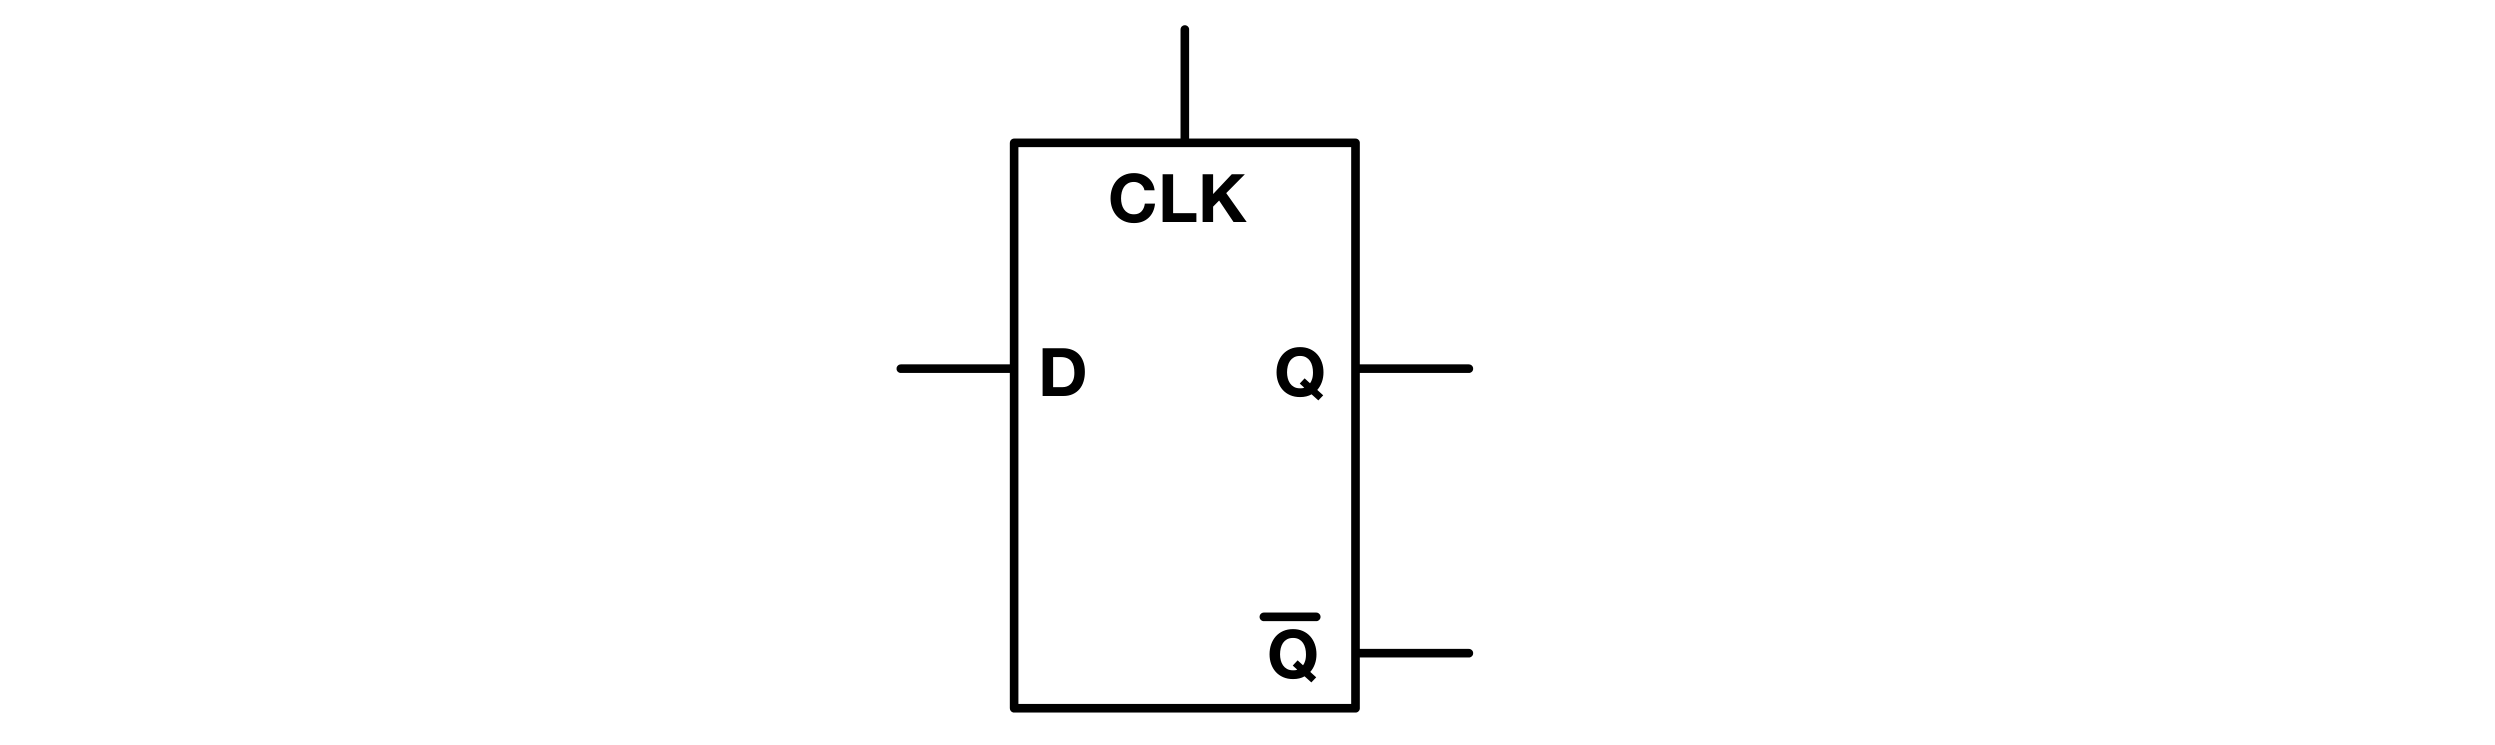 Figure 17: D Latch Symbol